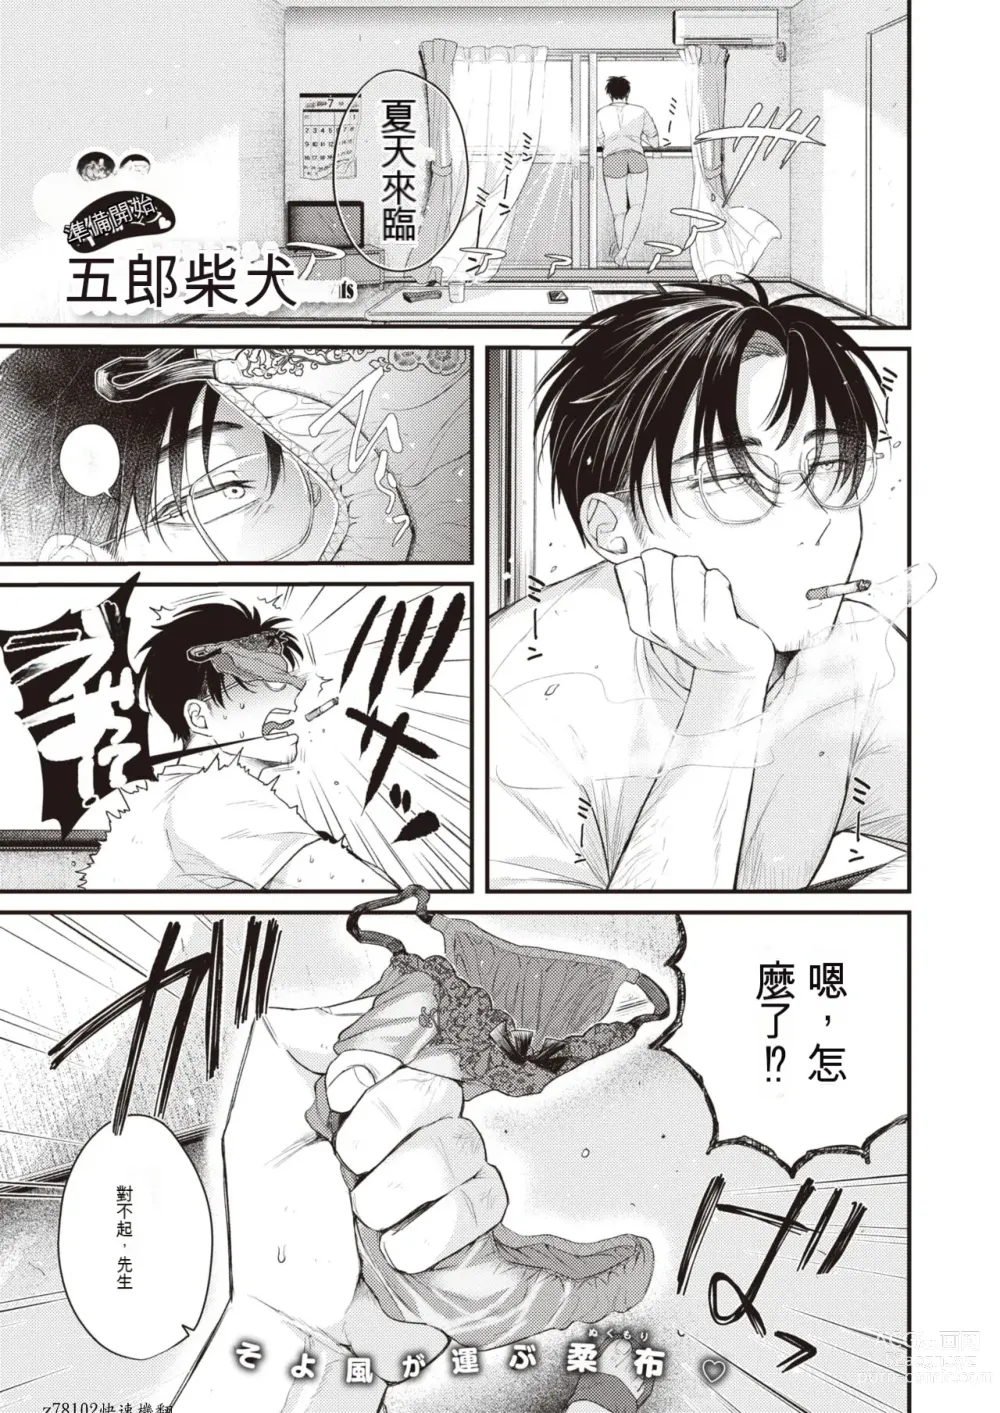 Page 1 of manga Beranda Goshi no Shoka